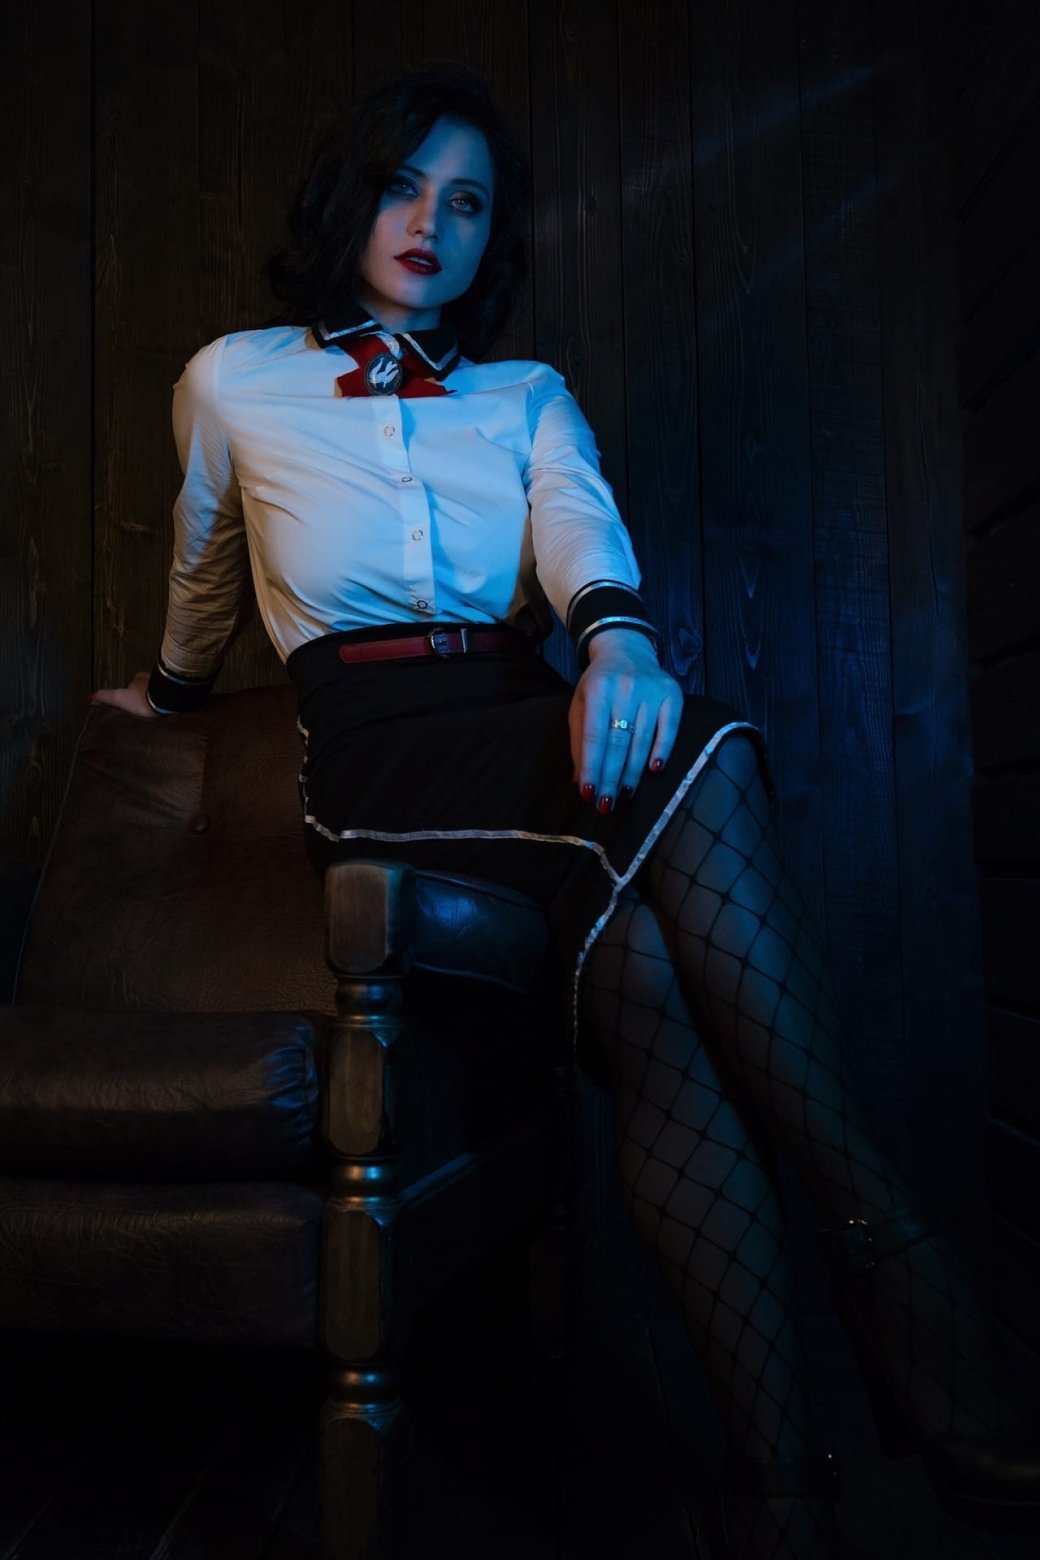 Галерея Косплеерша повторила образ роковой Элизабет из BioShock Infinite - 6 фото